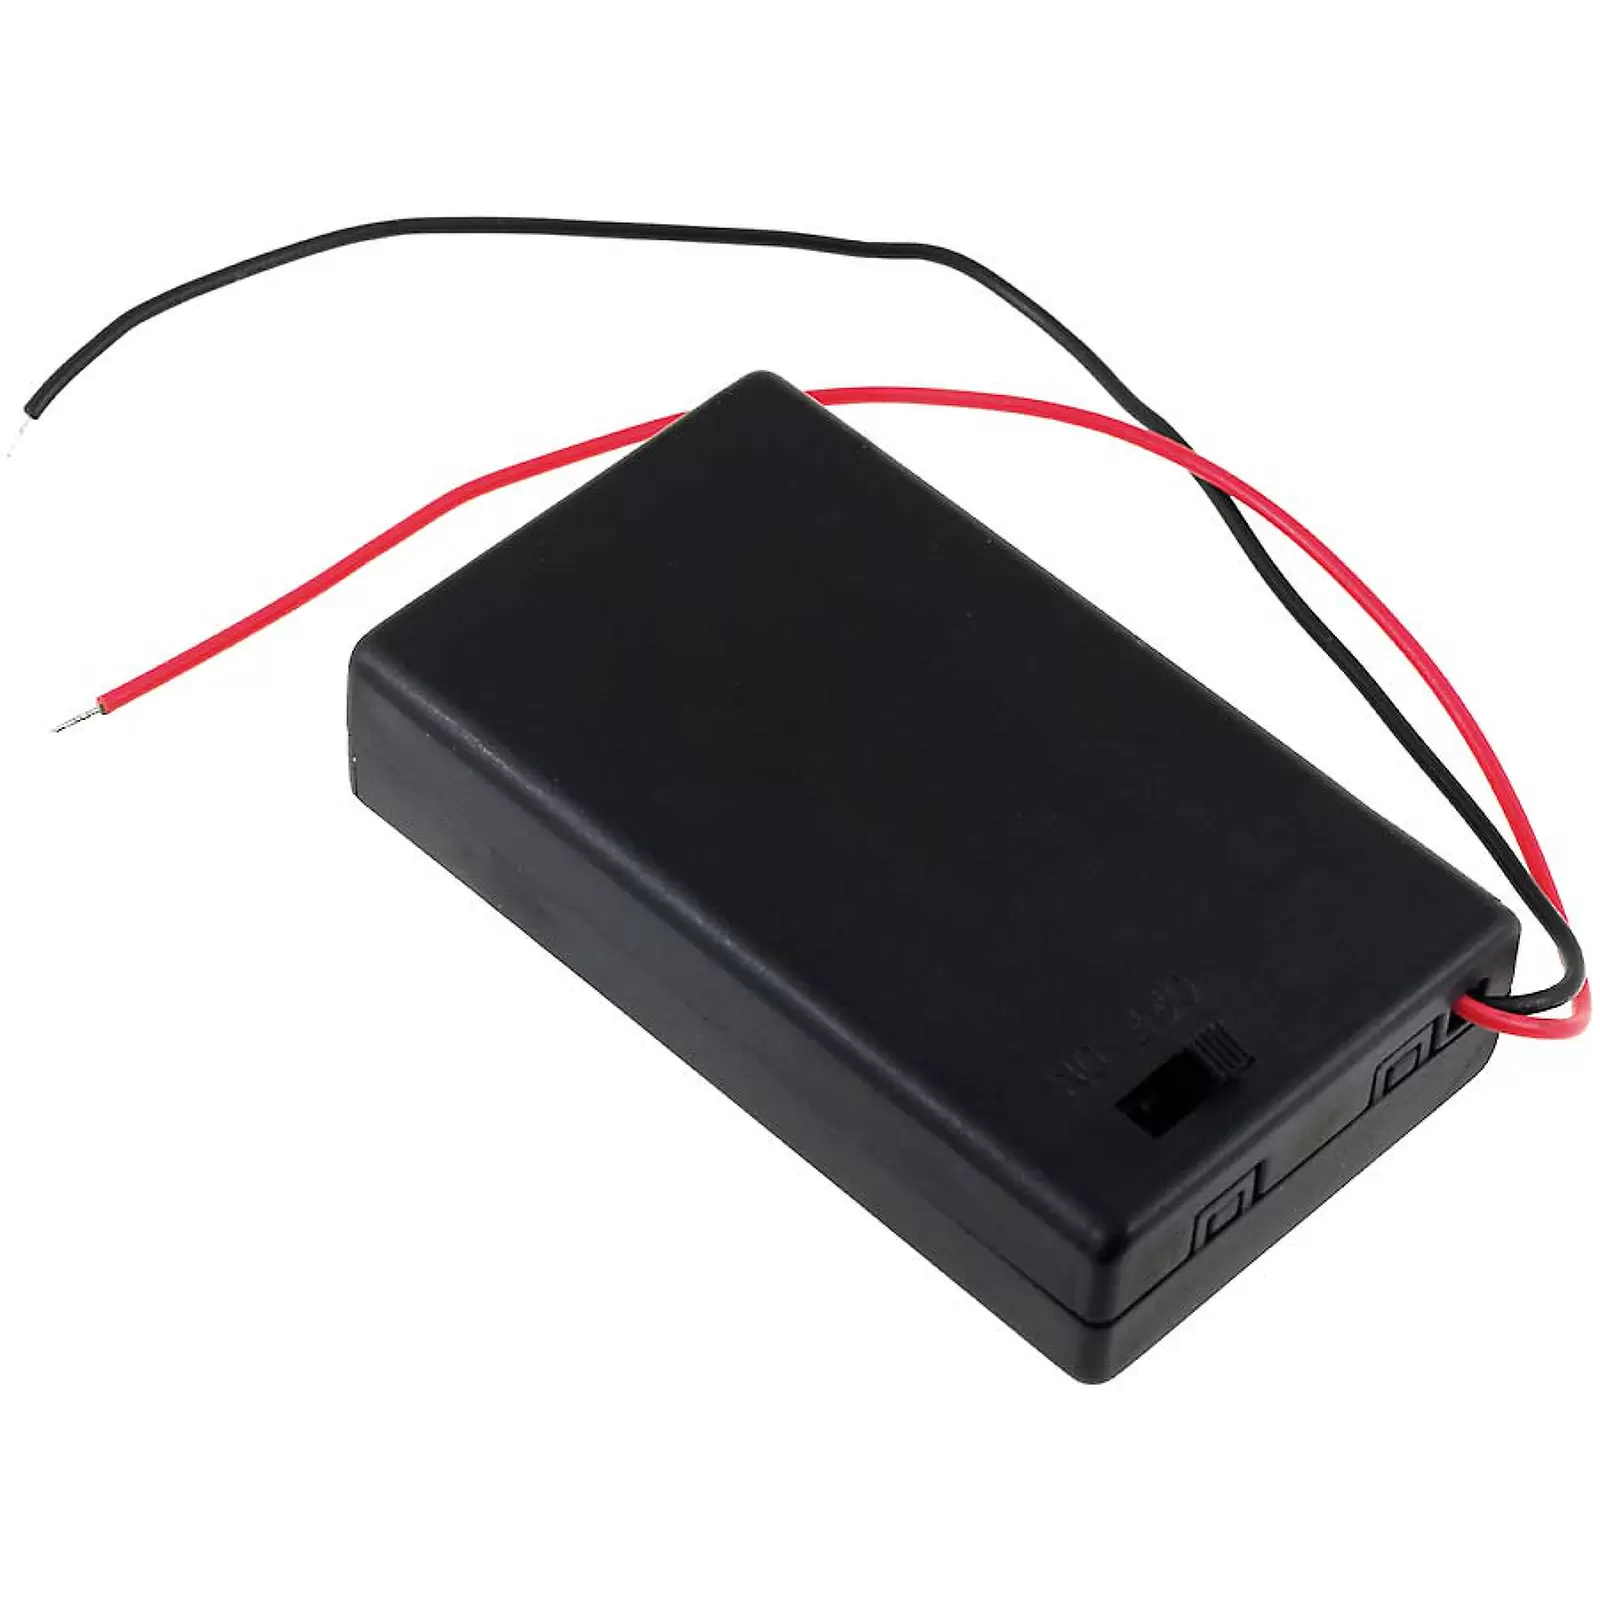 Batteriehalter für 3x Micro/AAA Batterien mit Anschlusskabel